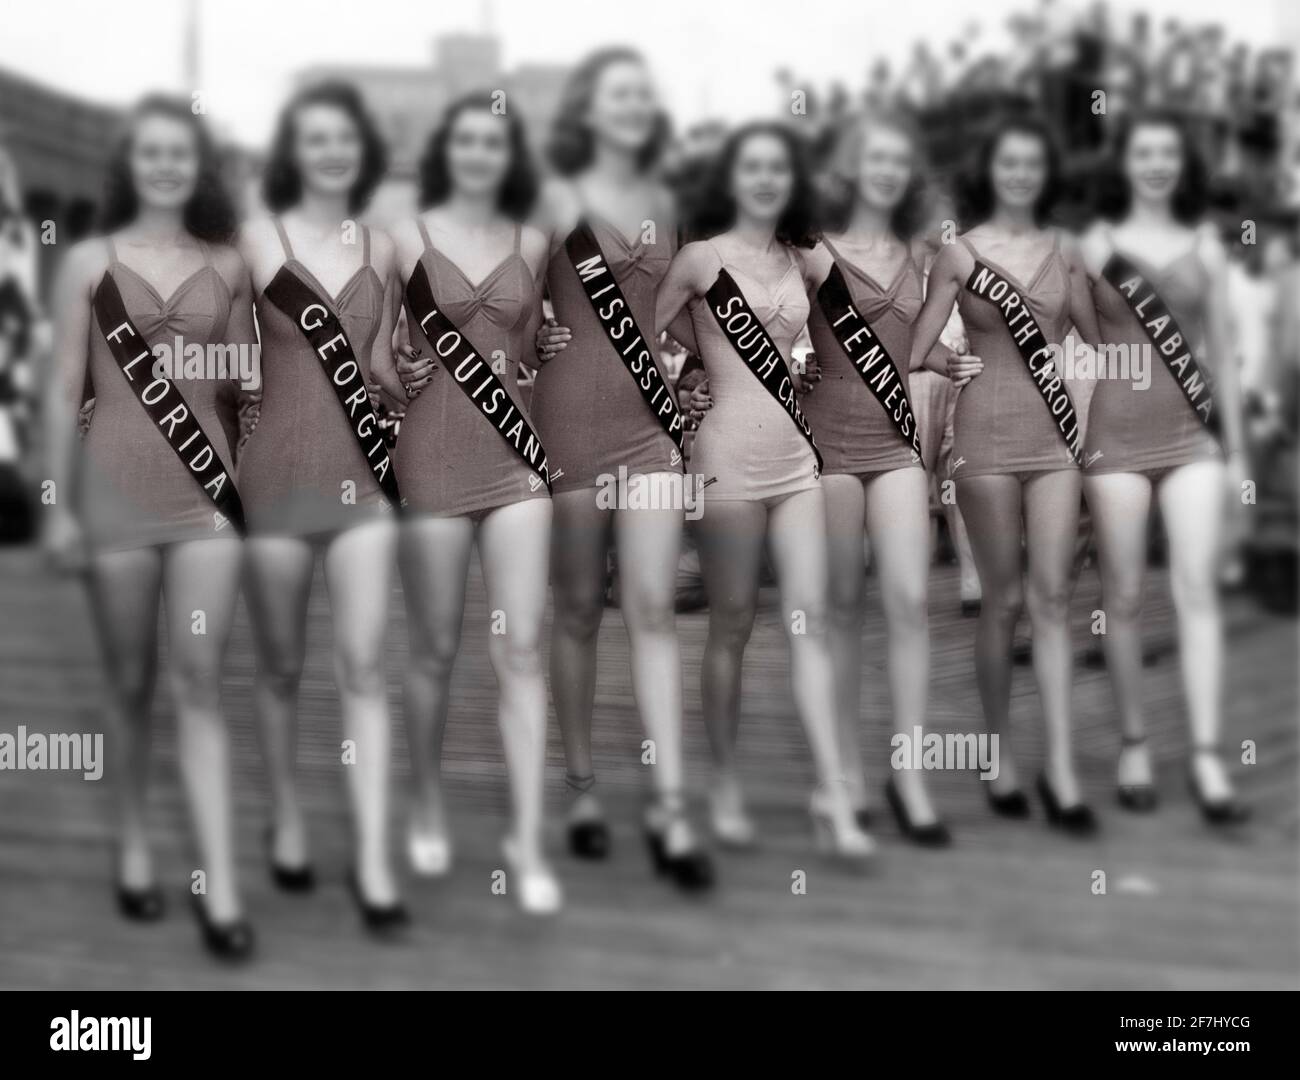 Una fotografia pubblicitaria della fine degli anni '40 dei concorrenti americani di Miss a Atlantic City, New Jersey, alterata digitalmente e colorata per un effetto artistico. Foto Stock